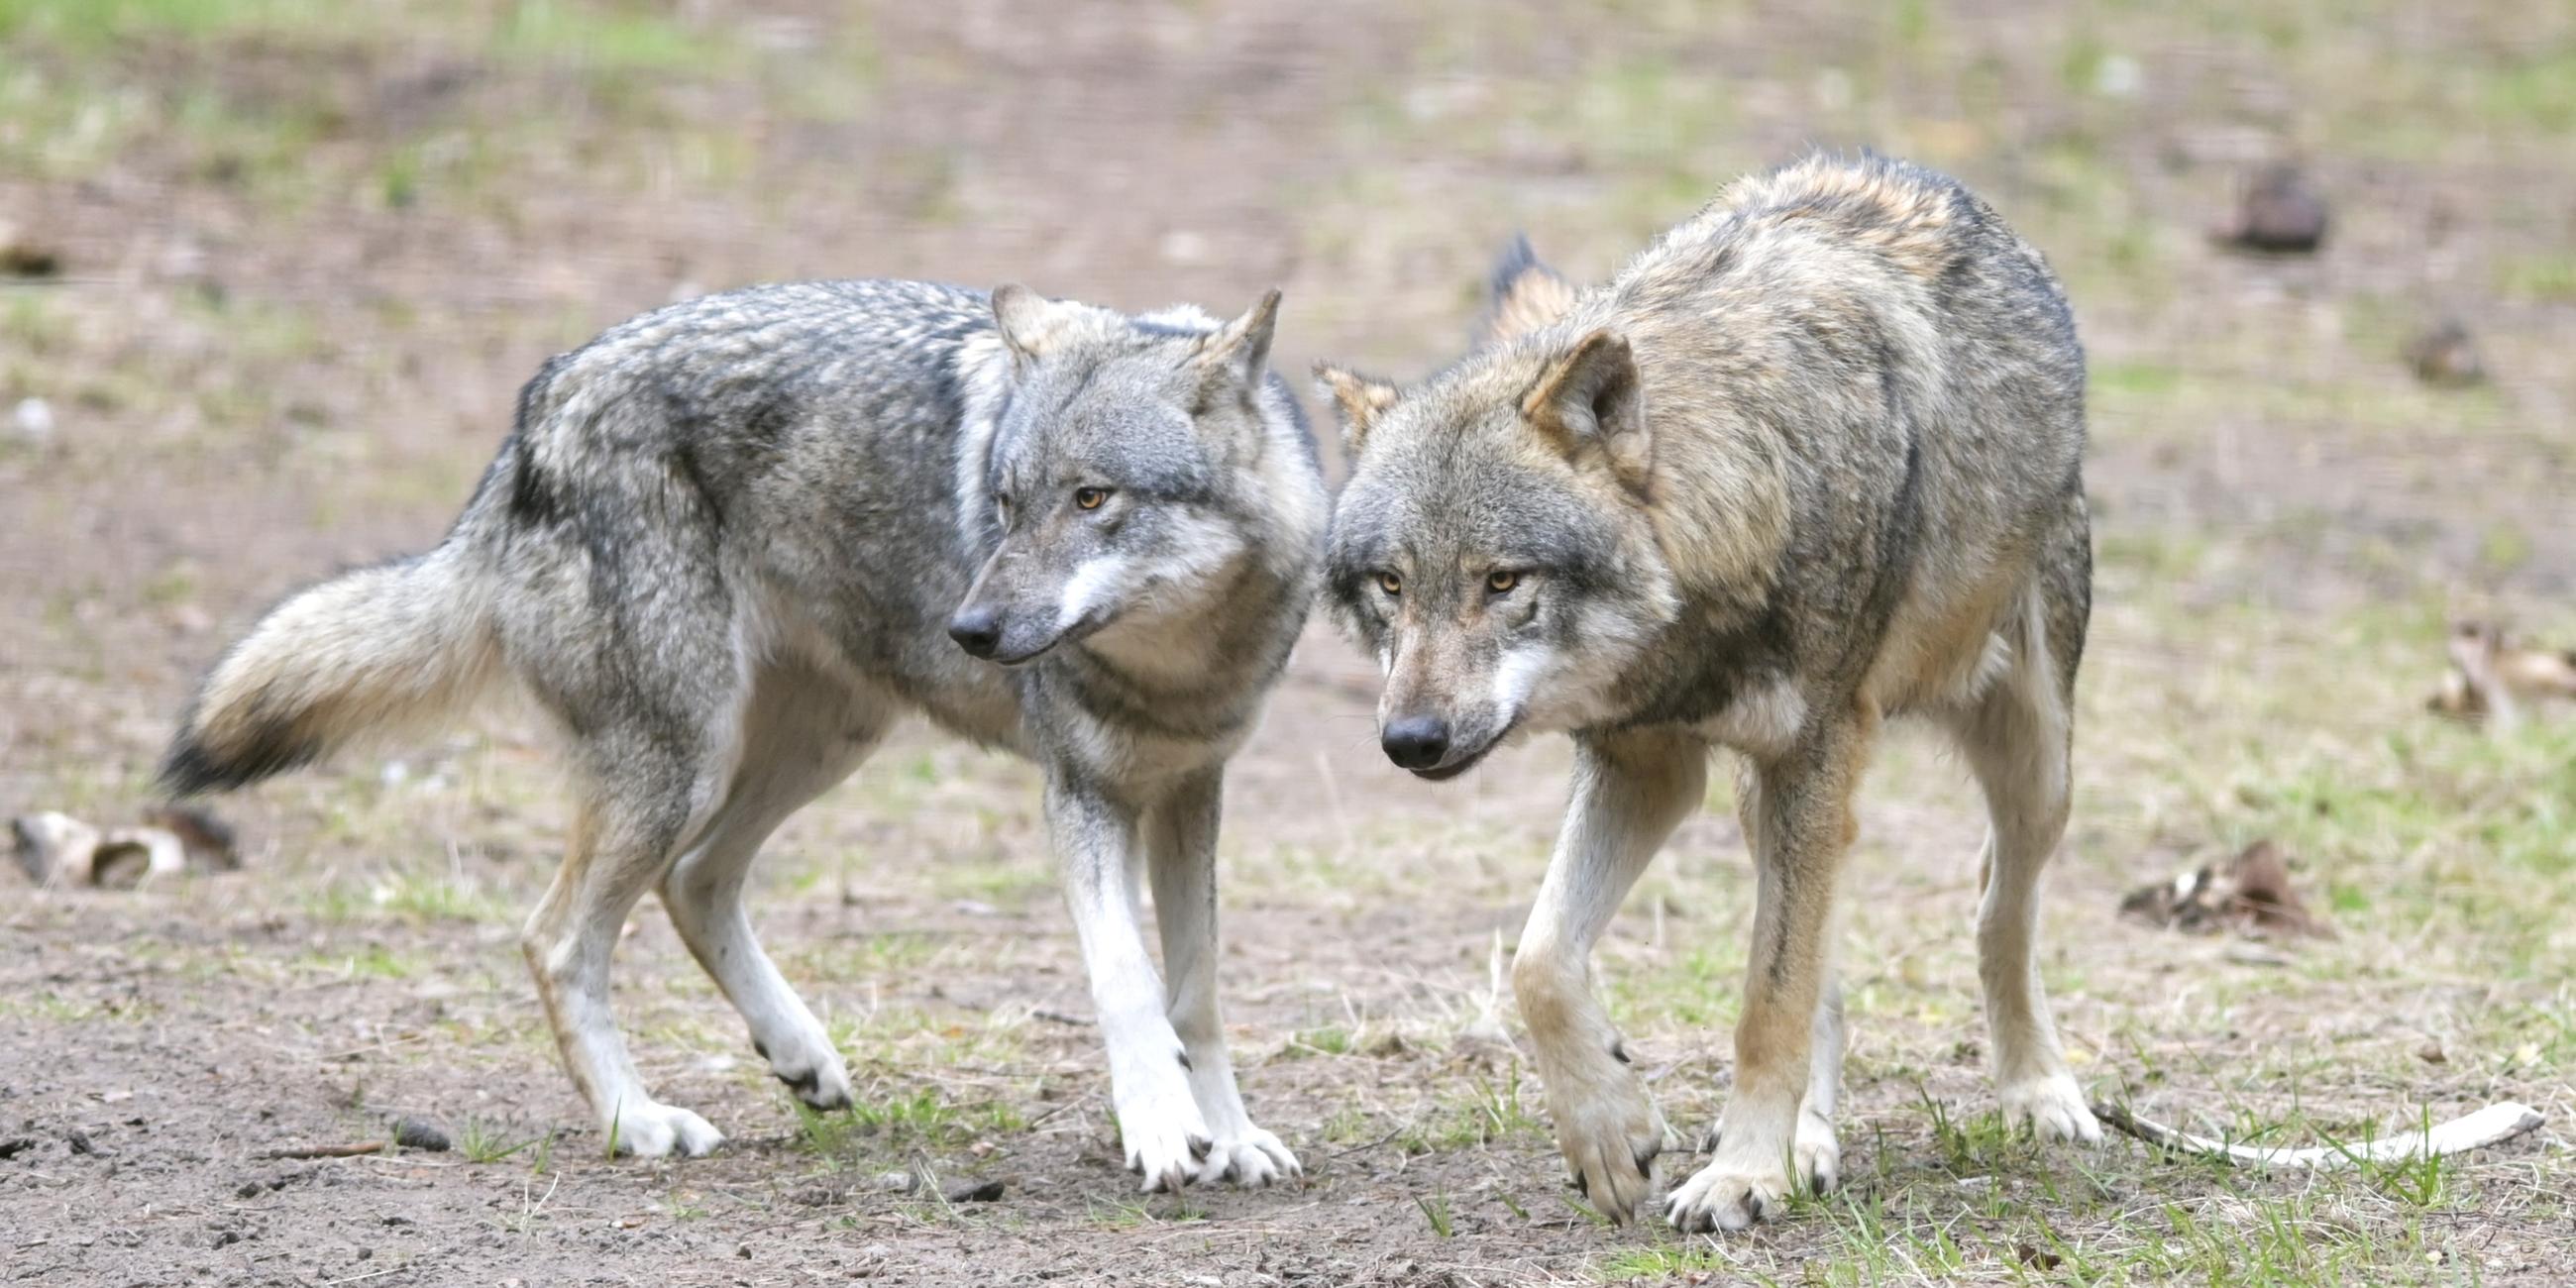 Archiv: Wölfe laufen im Wildpark Schorfheide durchs Gehege.